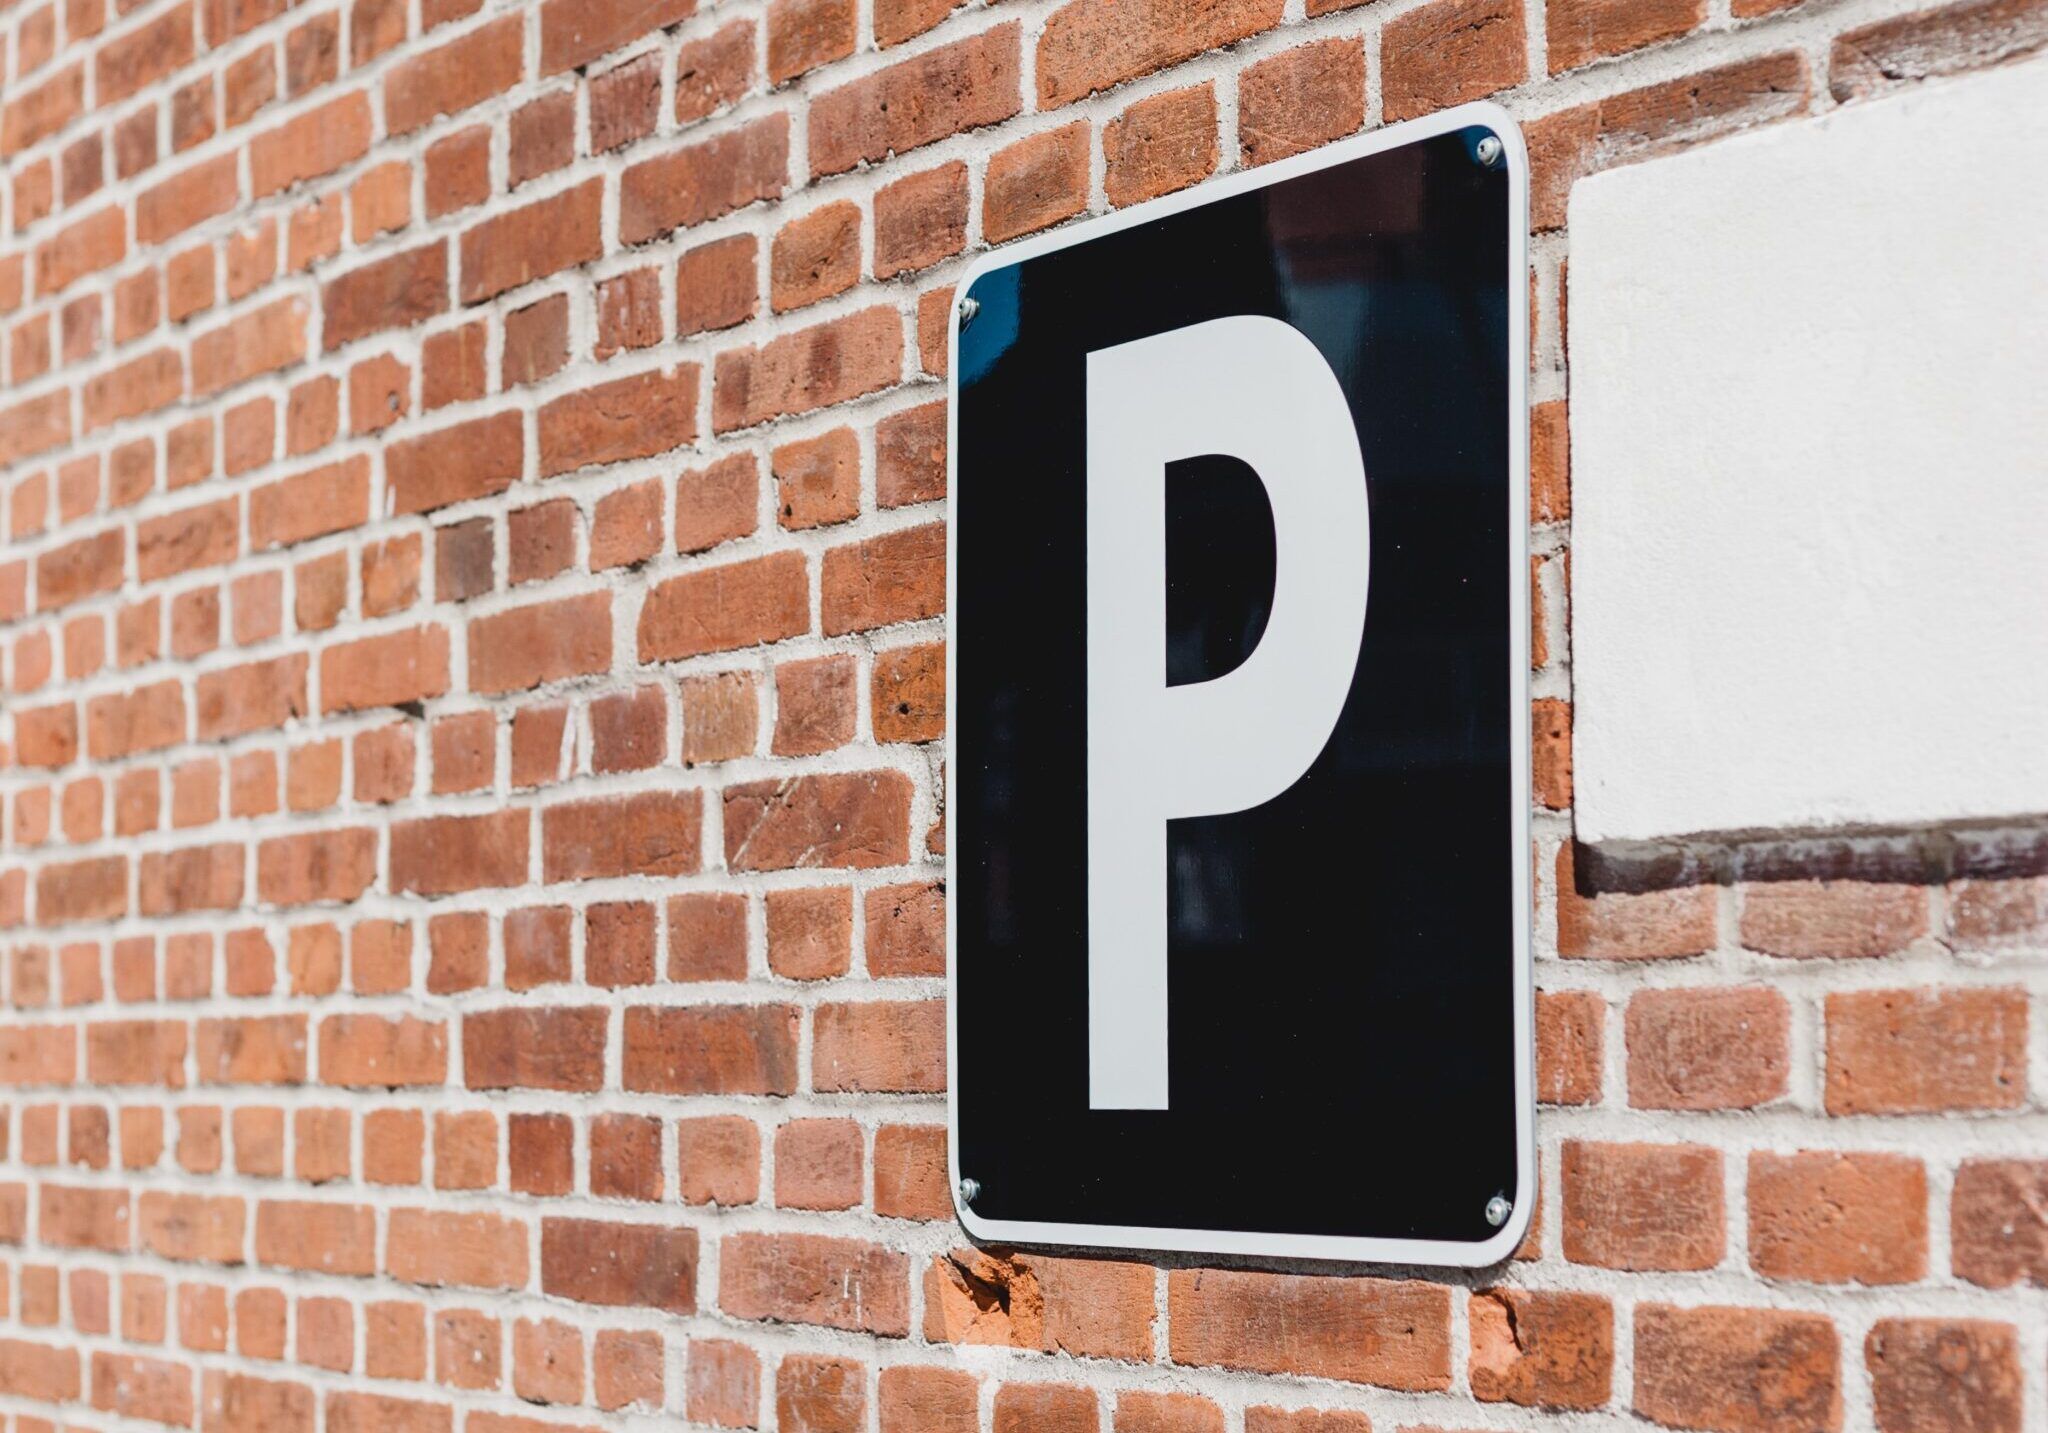 Стоимость платных муниципальных парковок в Калининграде не будет превышать 100 рублей